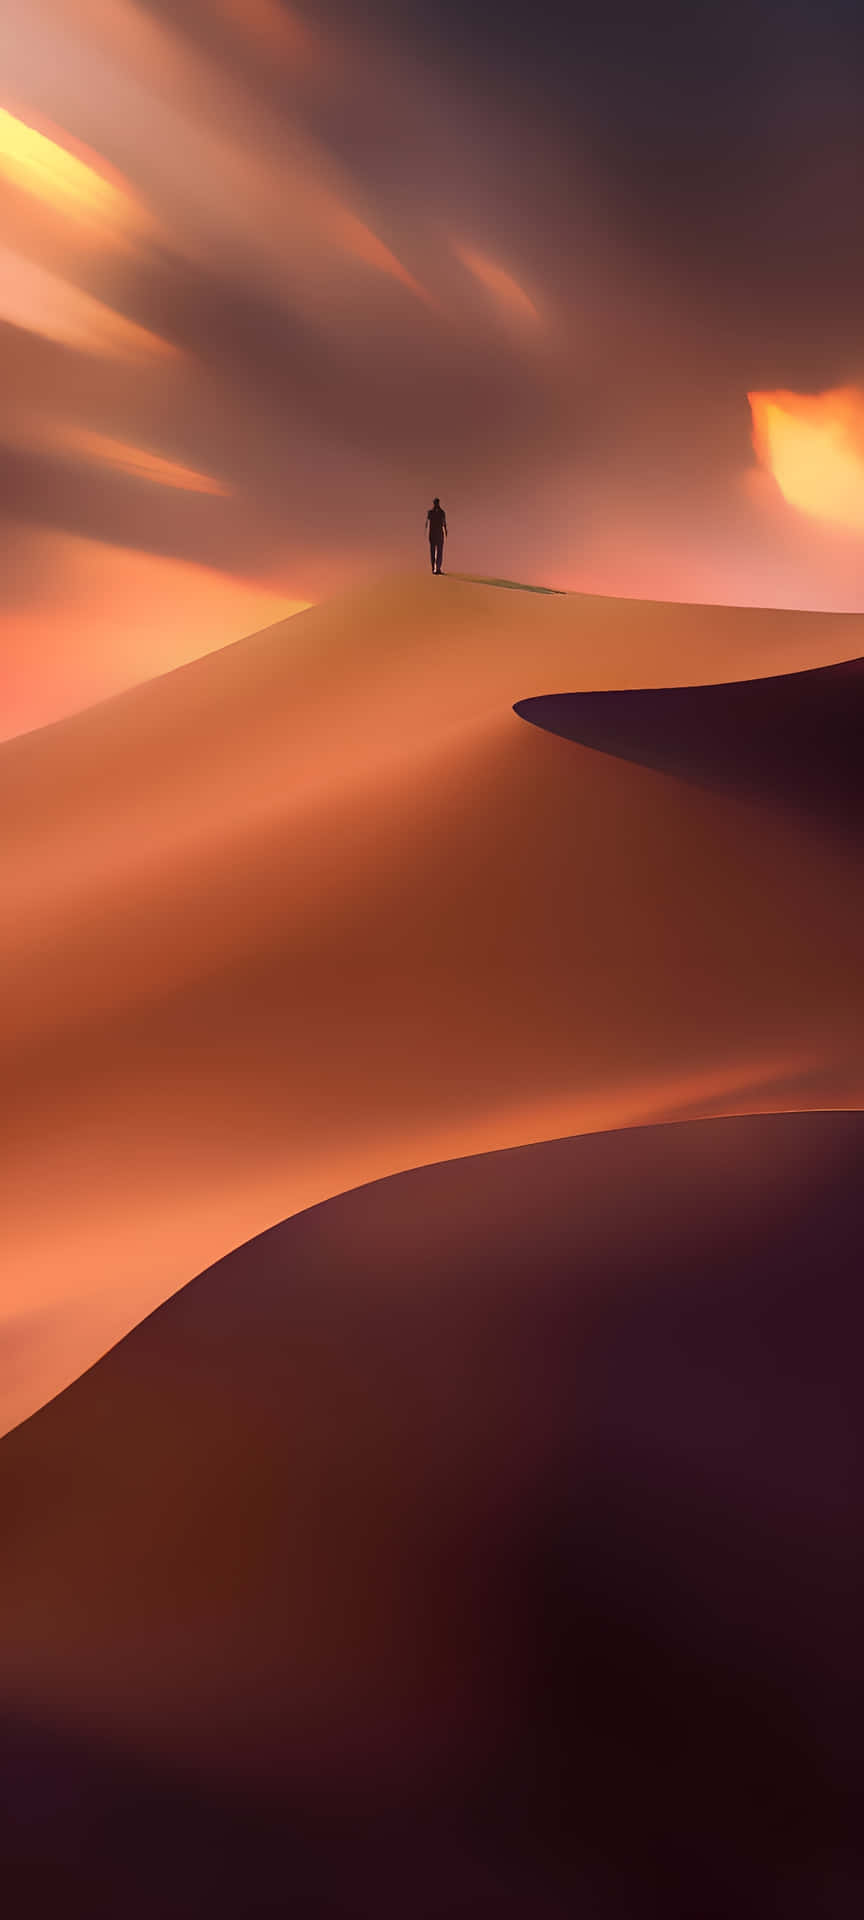 Fange Naturens skønhed med Desert Iphone Wallpaper. Wallpaper